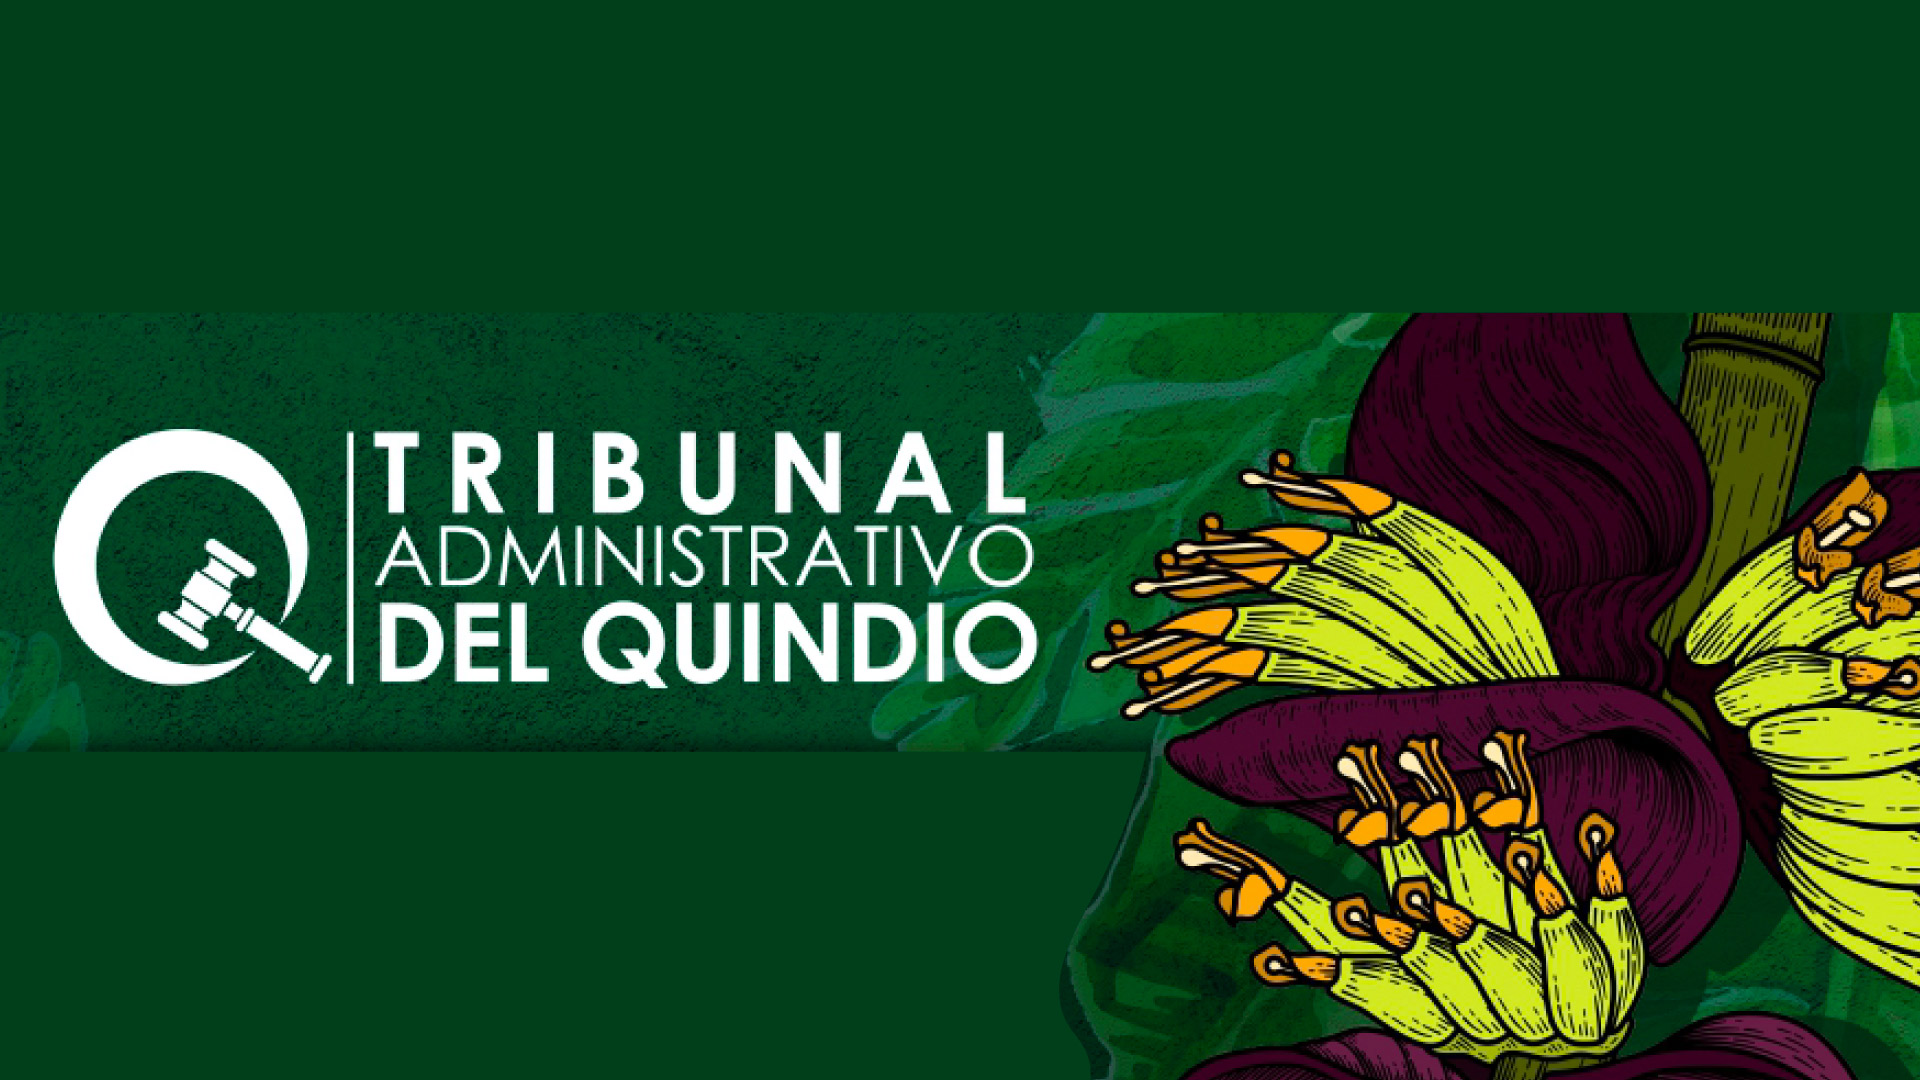 Uniquindío invita al lanzamiento del Décimo Número de la Revista Contacto IUS del Tribunal Administrativo del Quindío